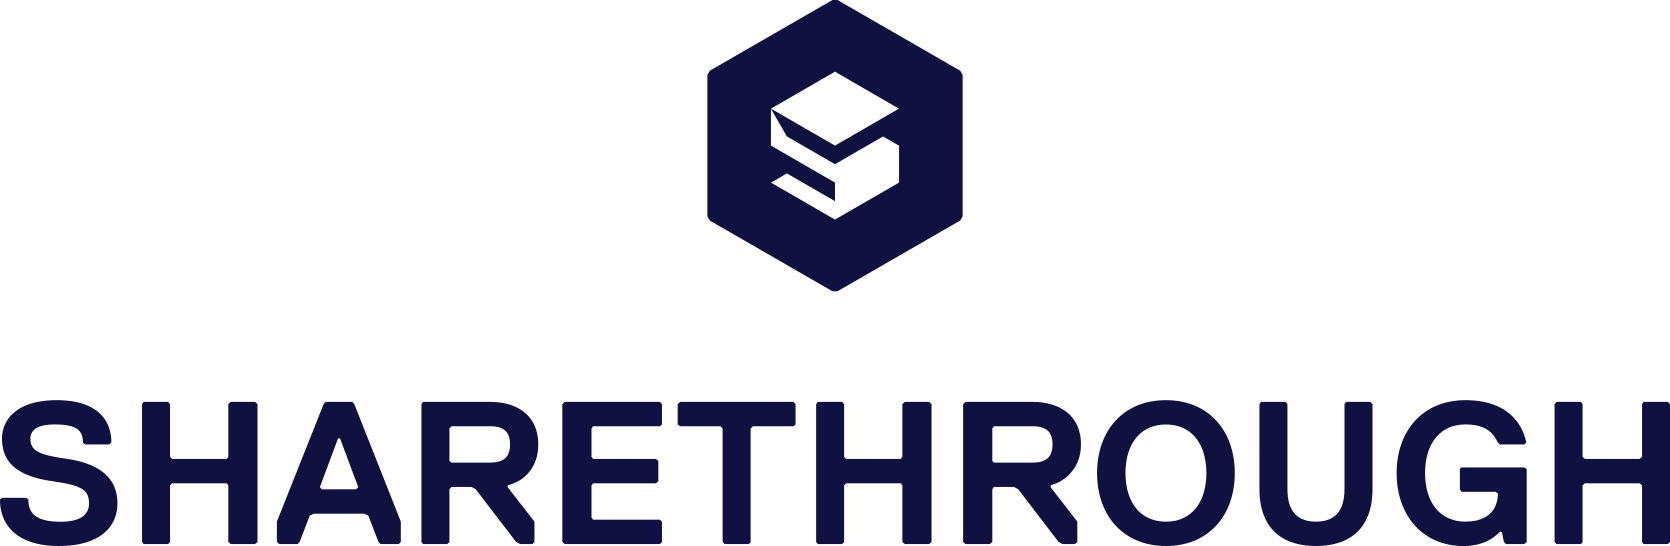 Sharethrough Logo